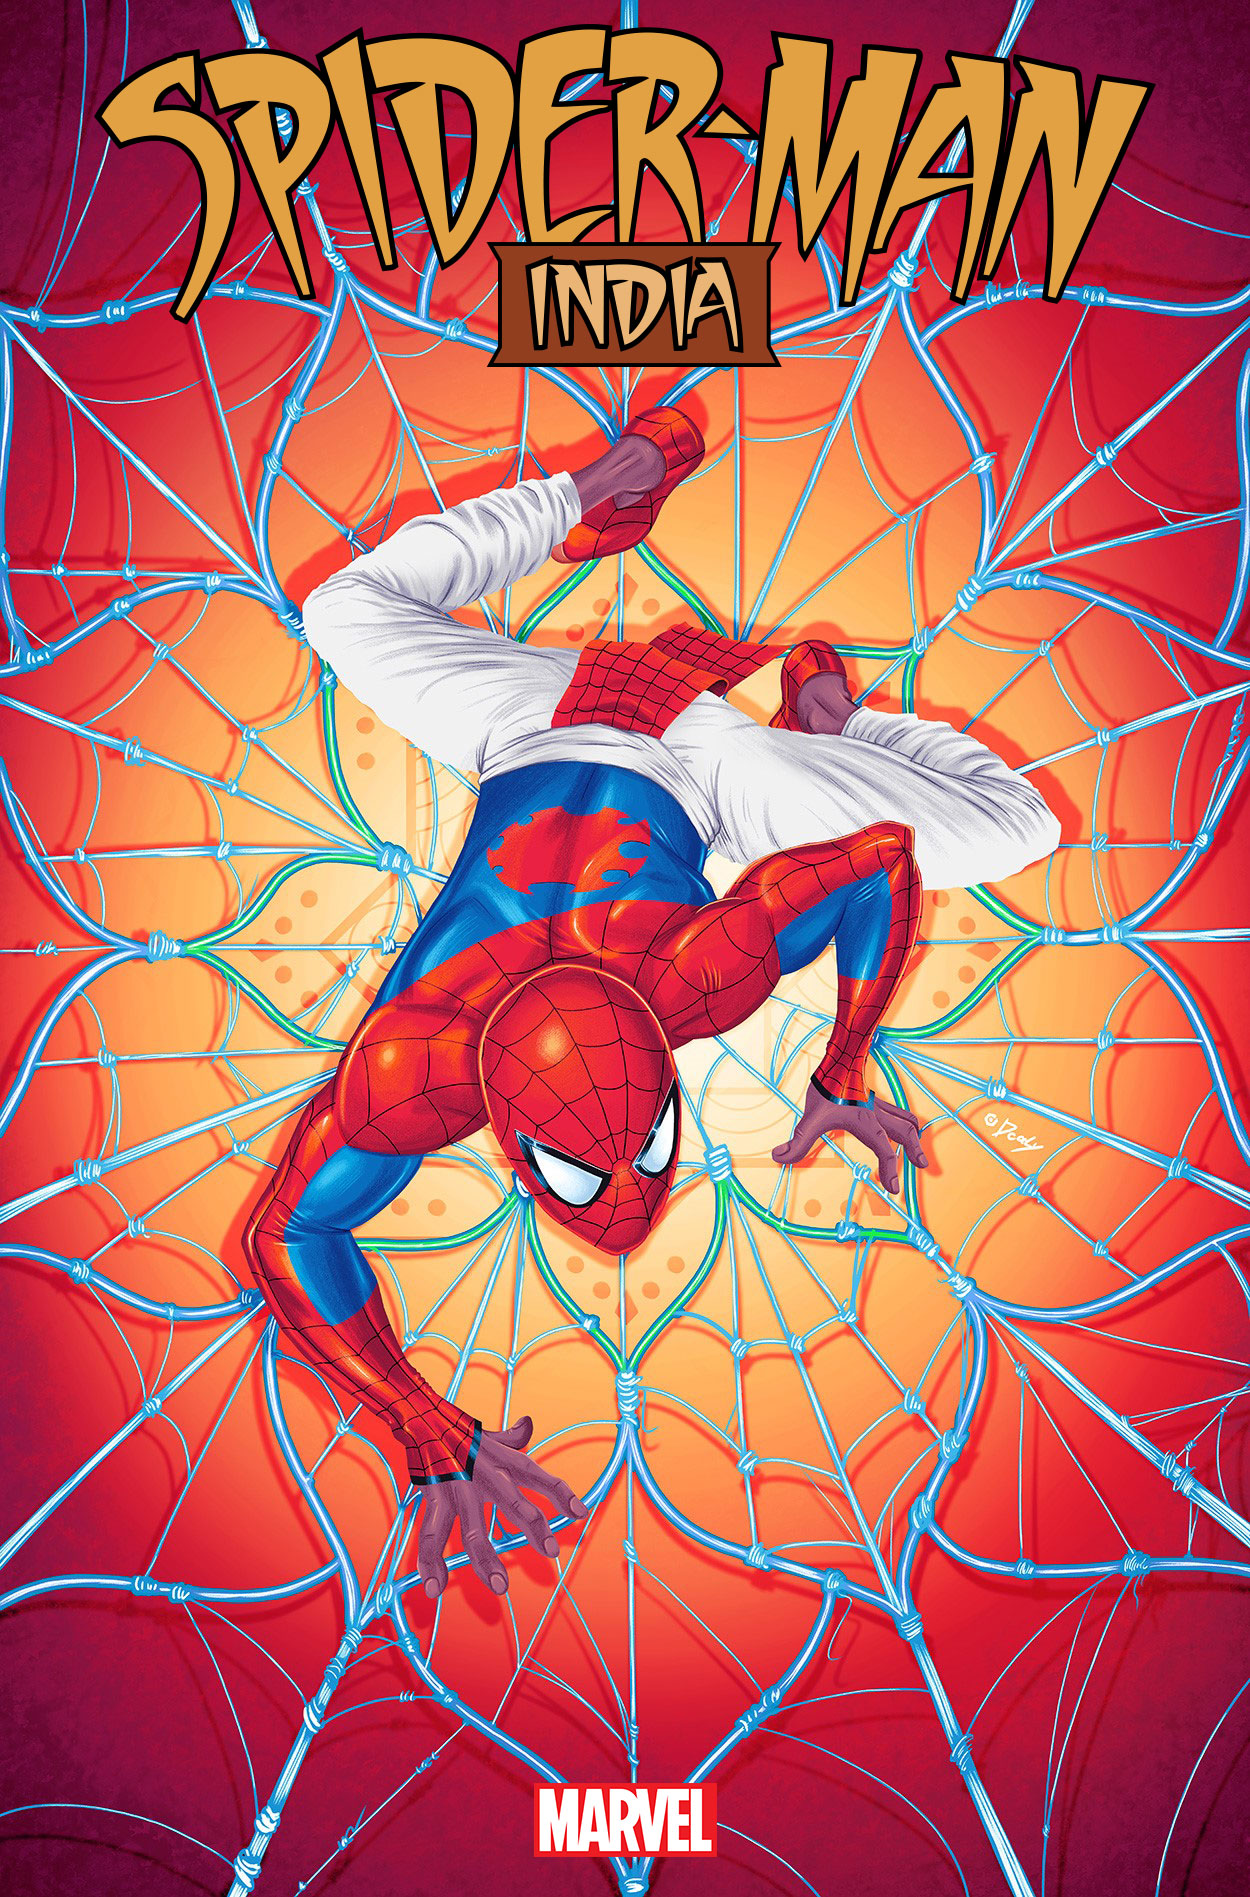 Das vollständige Cover der Animationsvariante von Doaly für Spider-Man: India #1